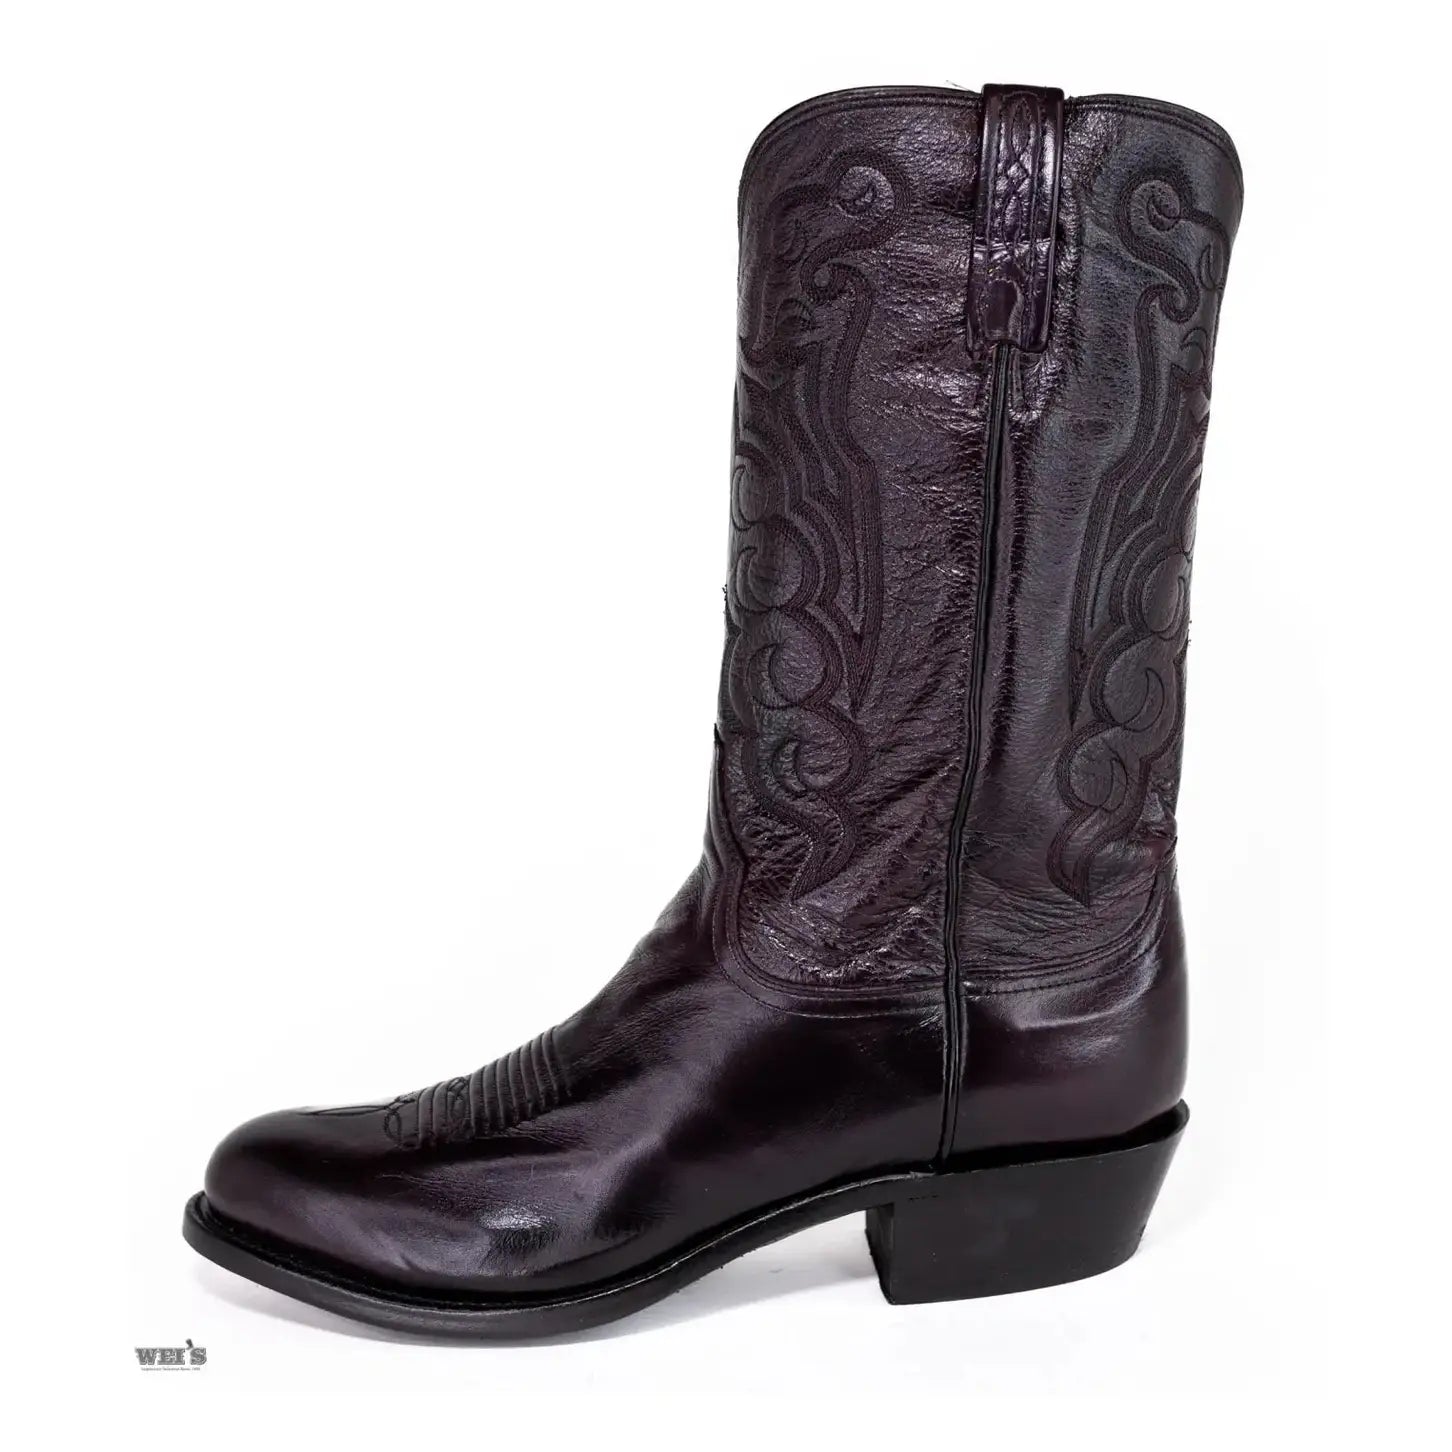 Lucchese 1883 Men's Cowboy Boots 13" Cordoba Calf Black N1614.R4